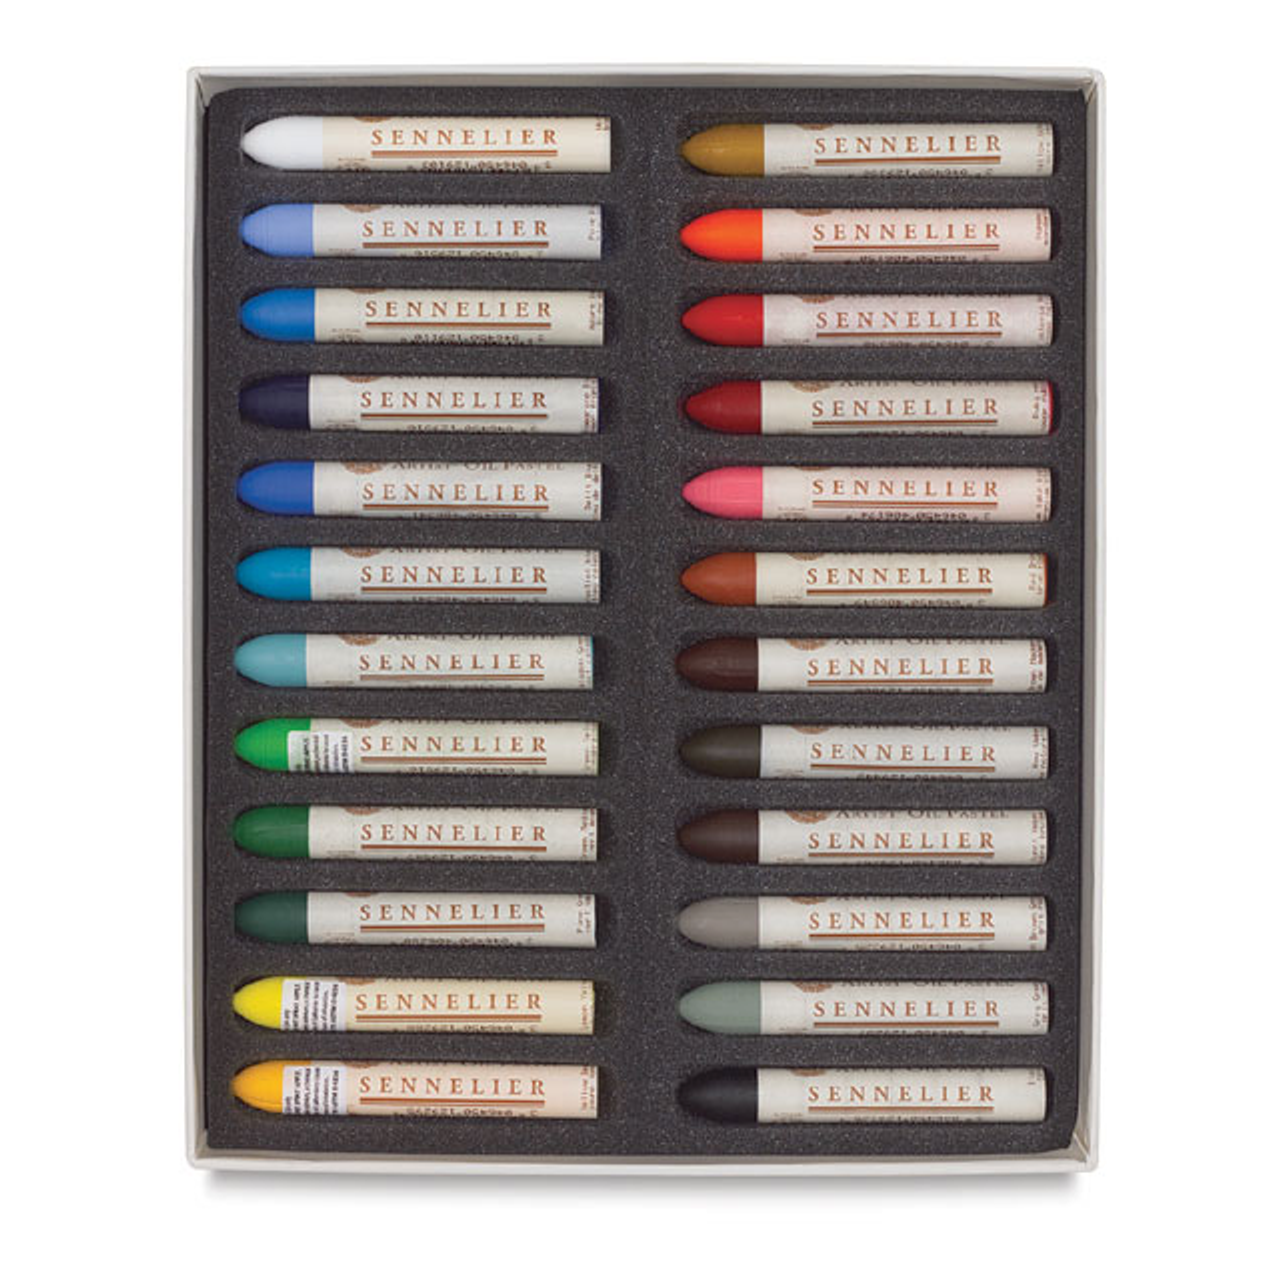 Sennelier Oil Pastels, Set of 24 Artist Colors